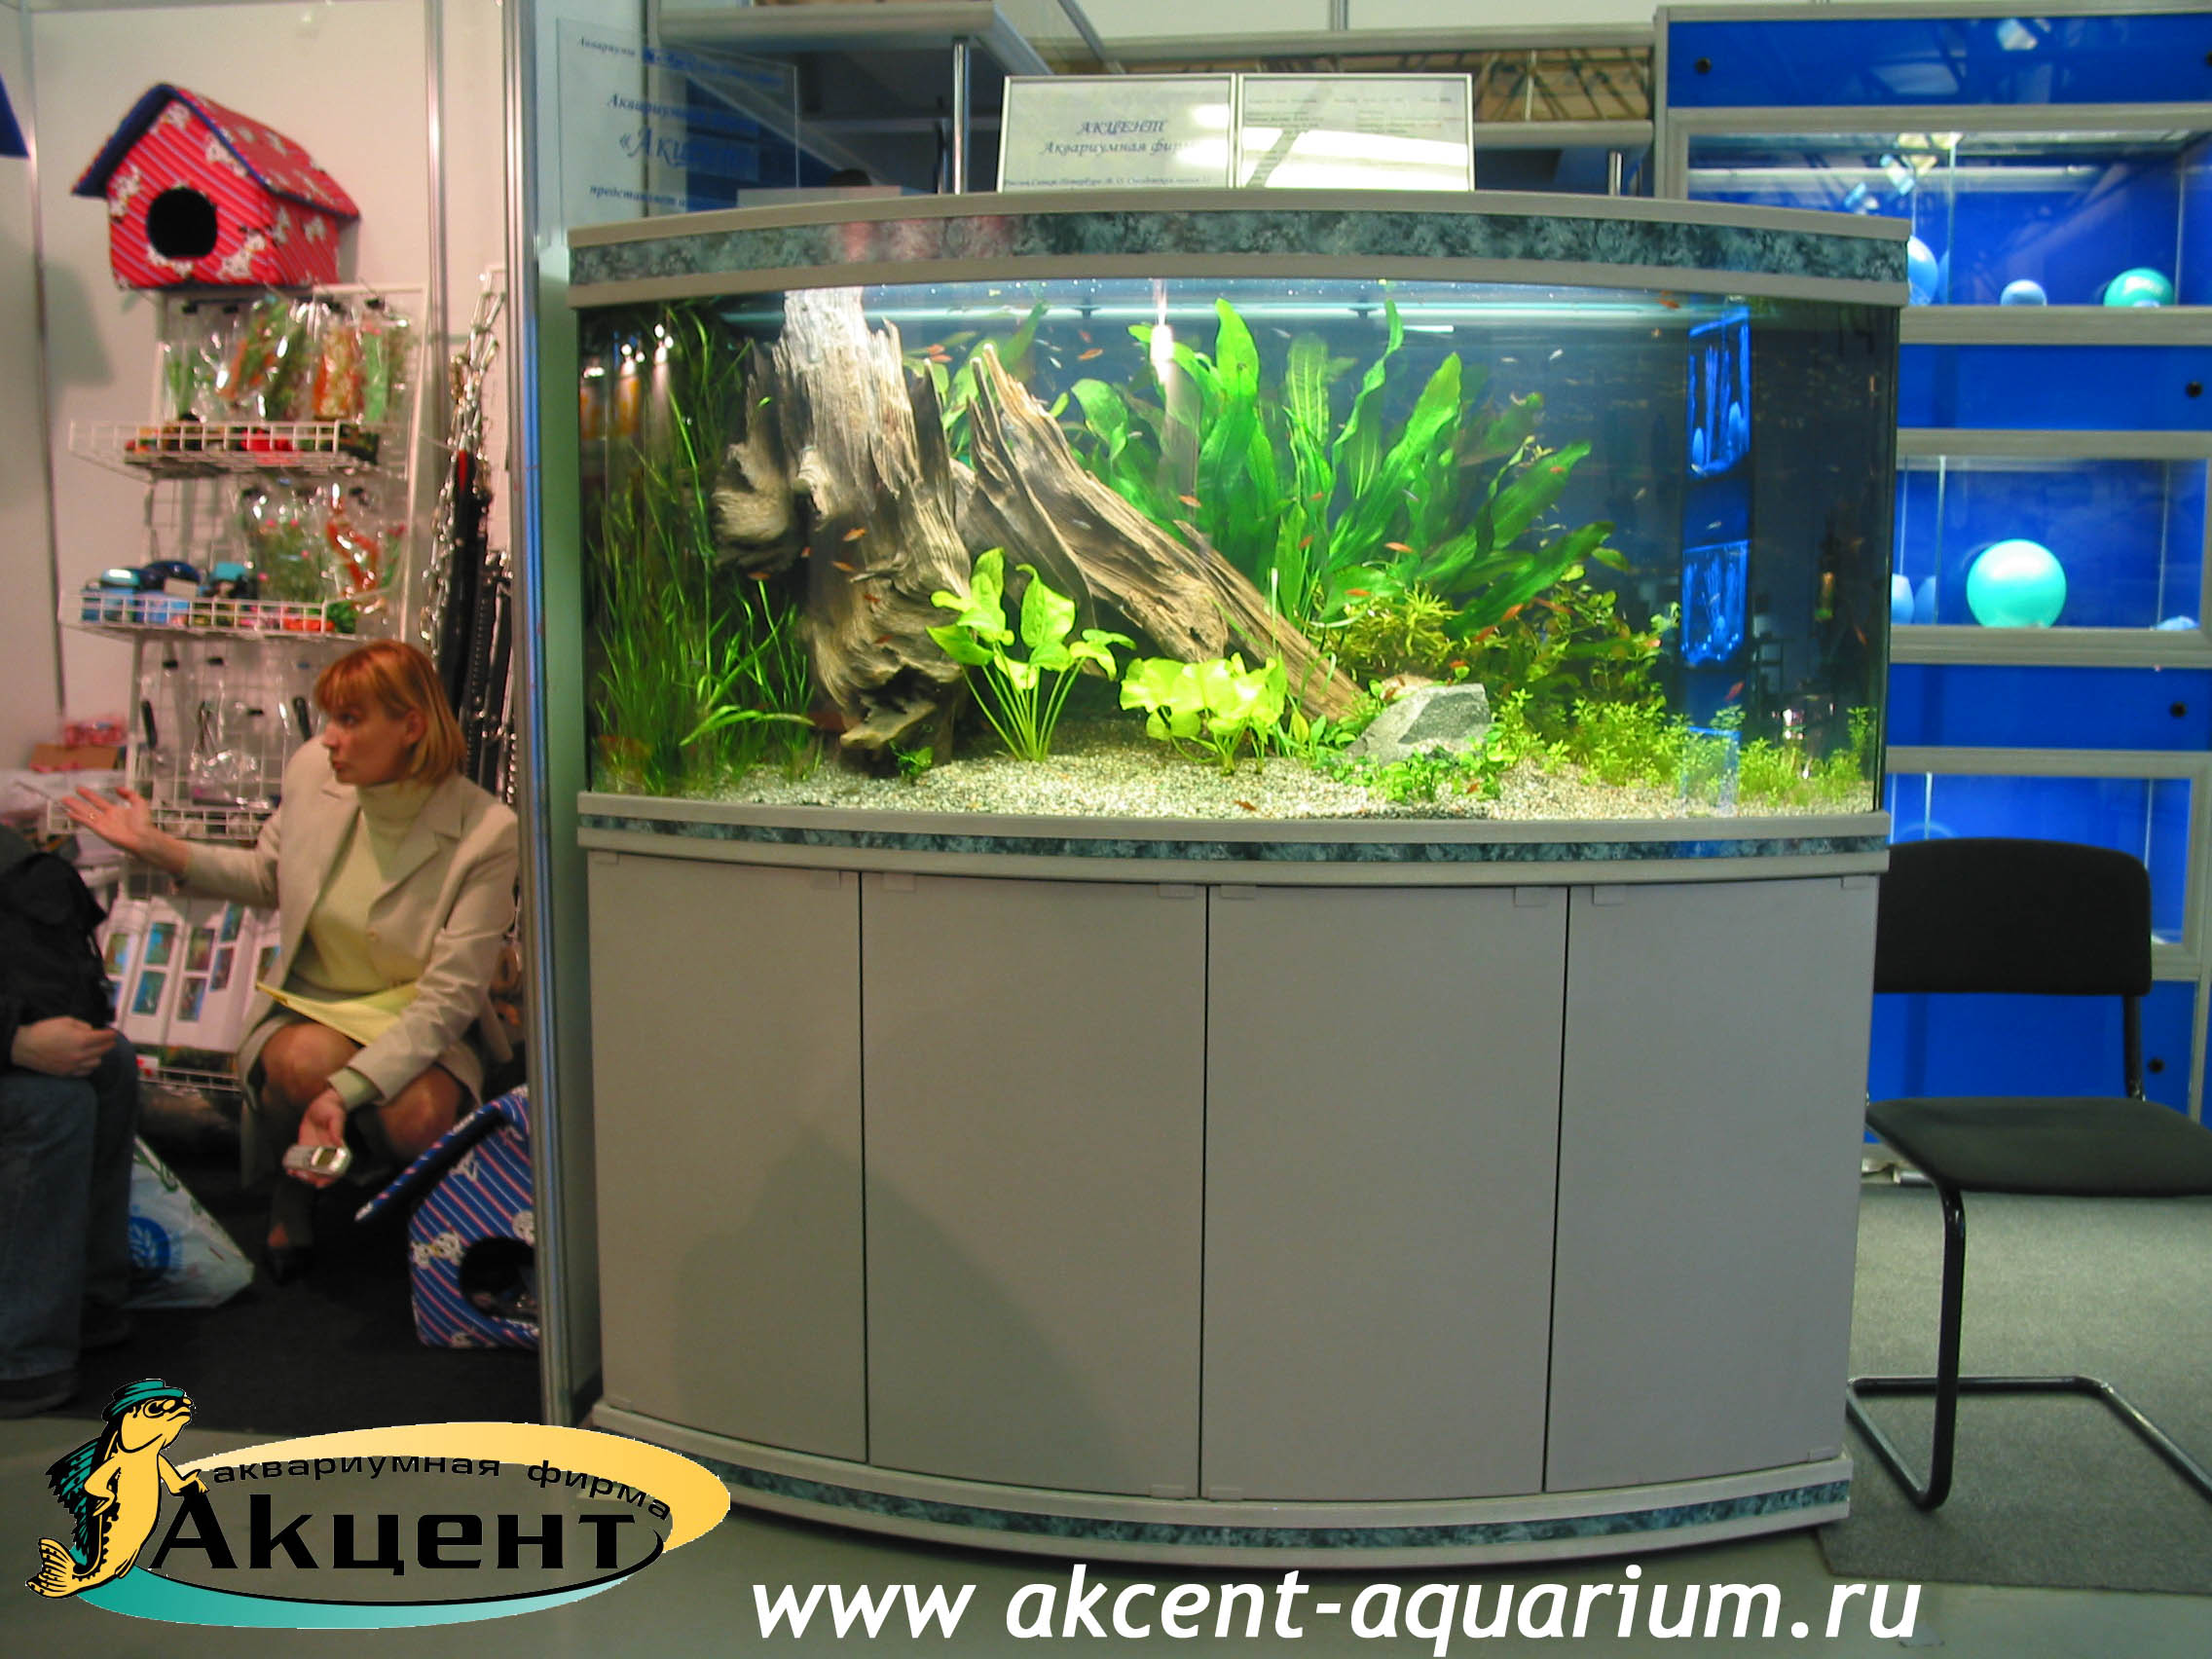 Акцент-аквариум, аквариум 600 литров, выставка зоосфера